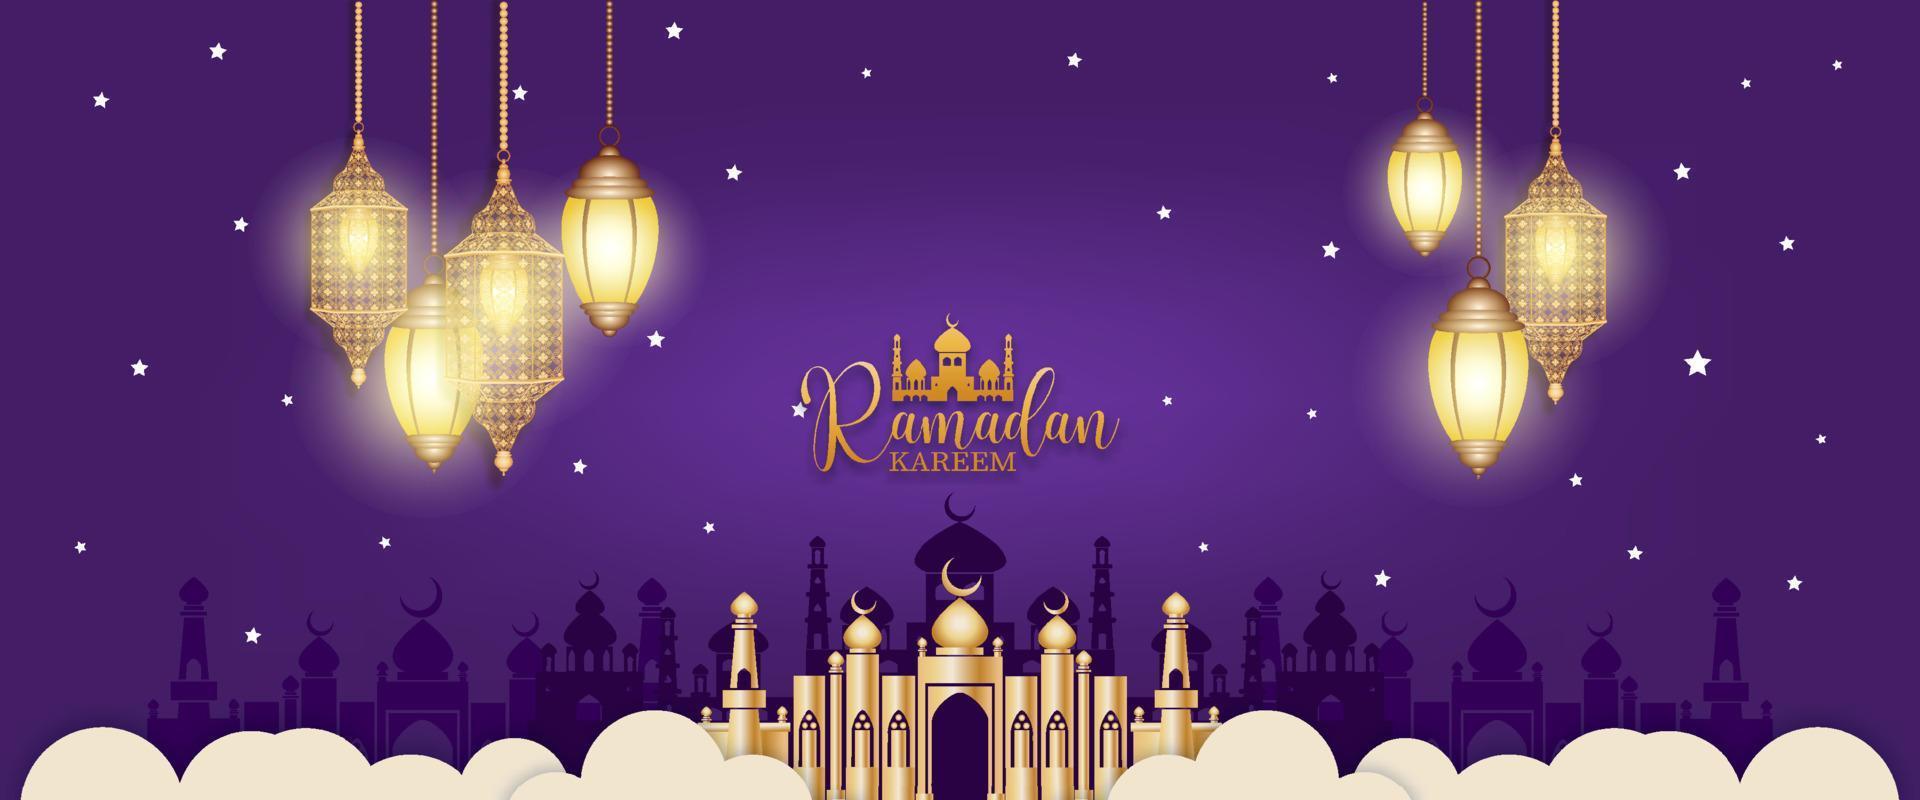 Gold Ramadan Kareem Vector for Wishing for Islamic festival.